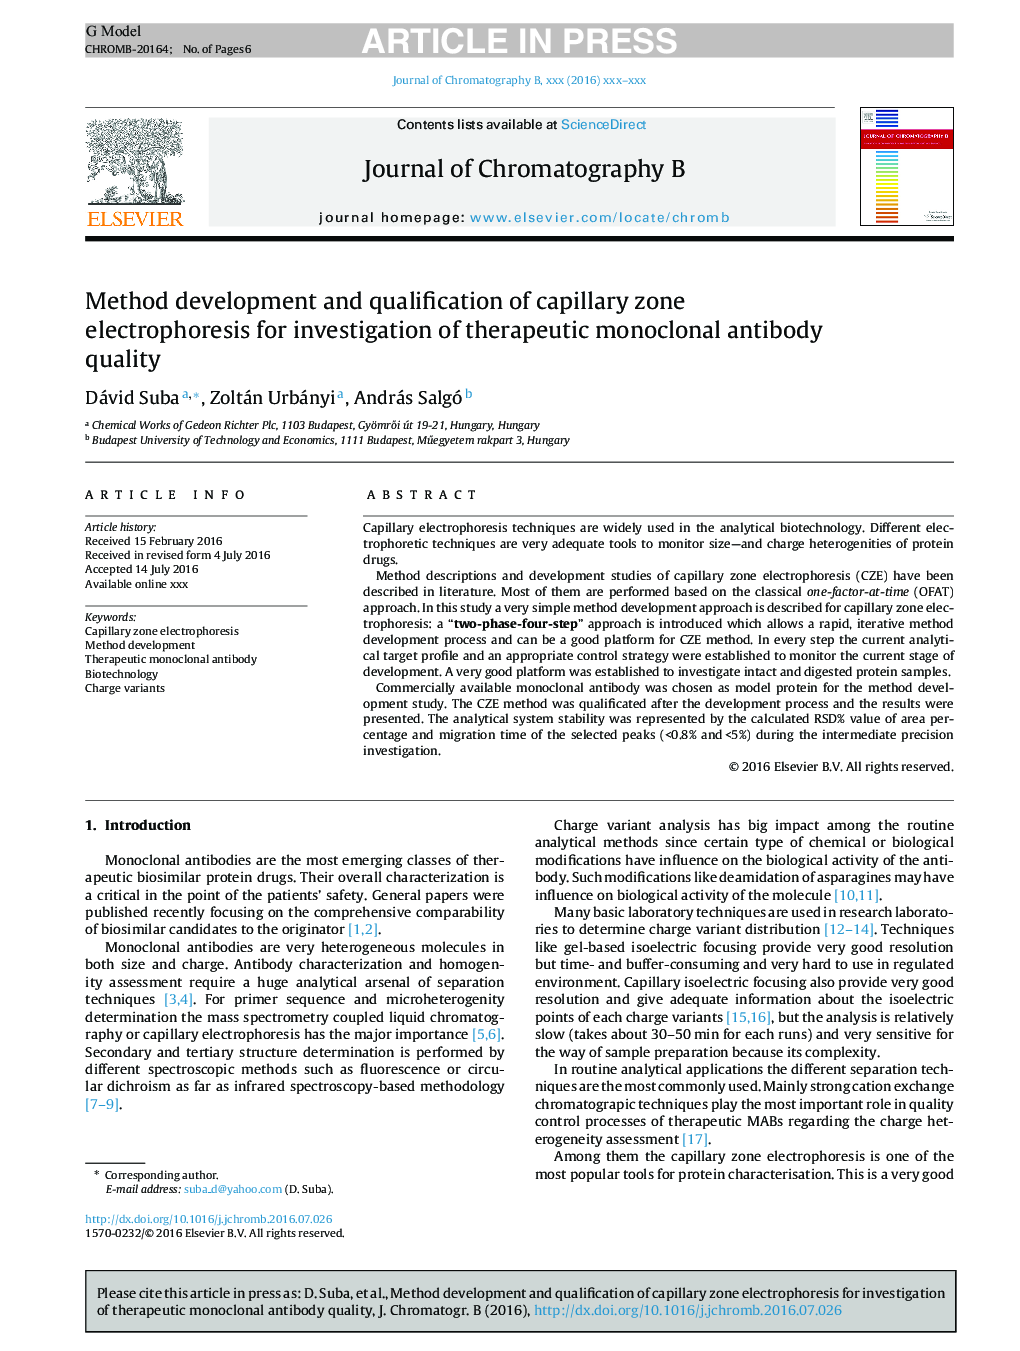 بررسی و بررسی روش الکتروفورز منطقه ای مویرگی برای بررسی کیفیت آنتی بادی منوکلونال درمانی 